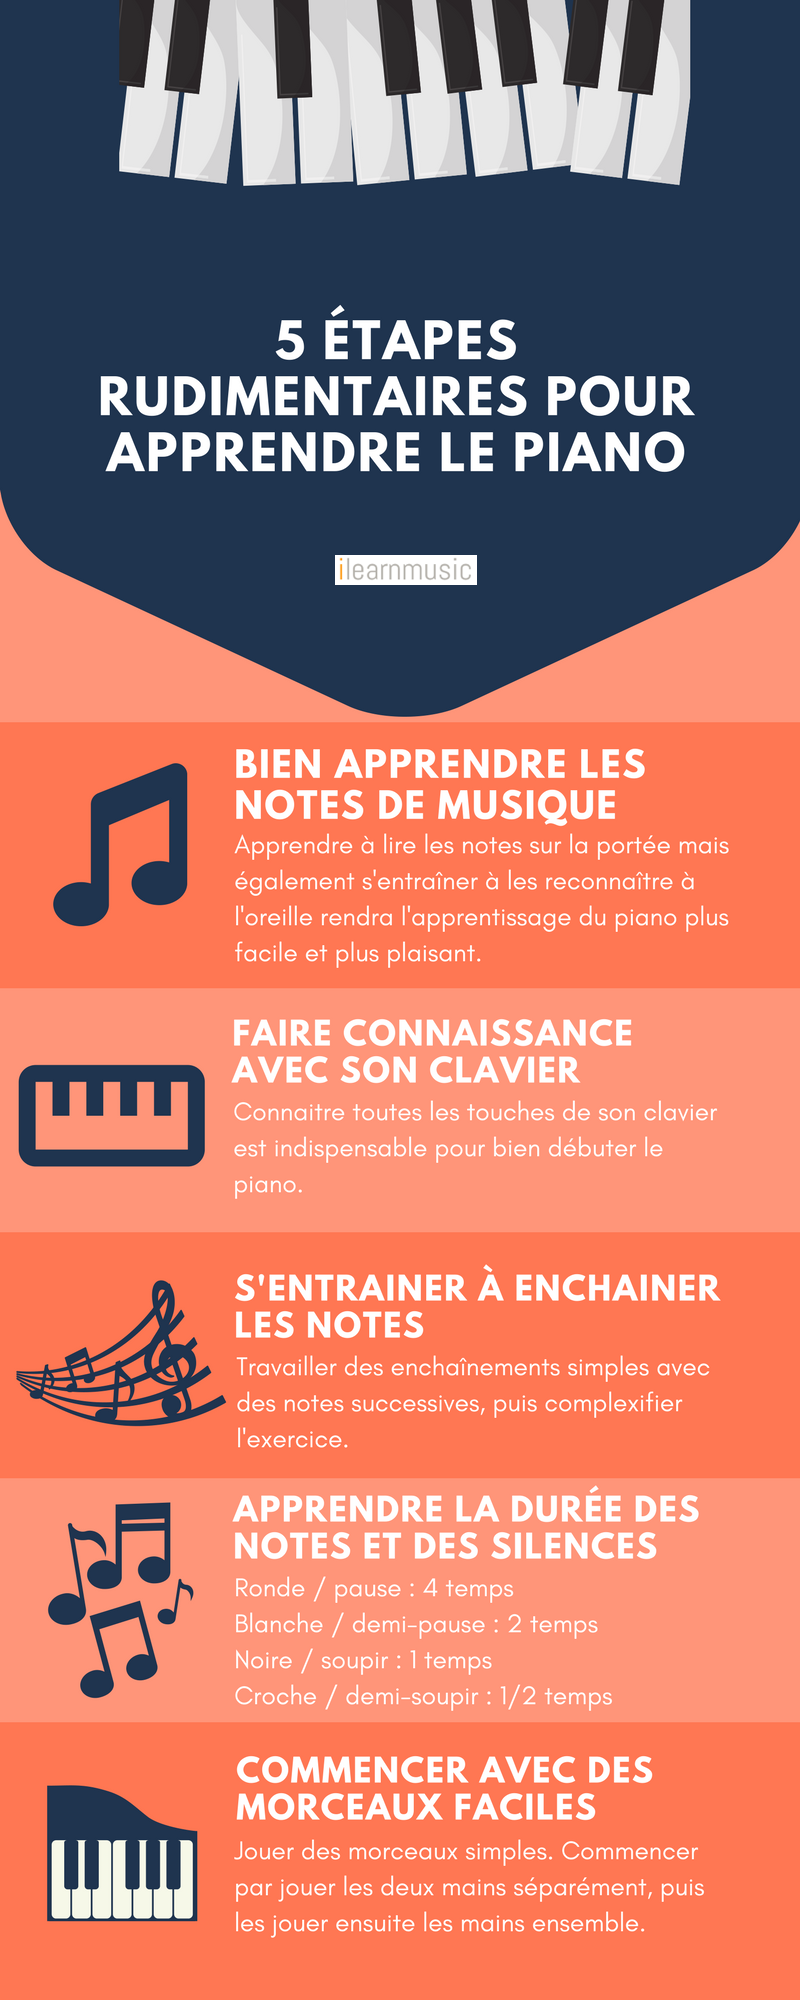 5 étapes rudimentaires pour apprendre le piano | Cours de Musique à Charleroi - www.musique-charleroi.be